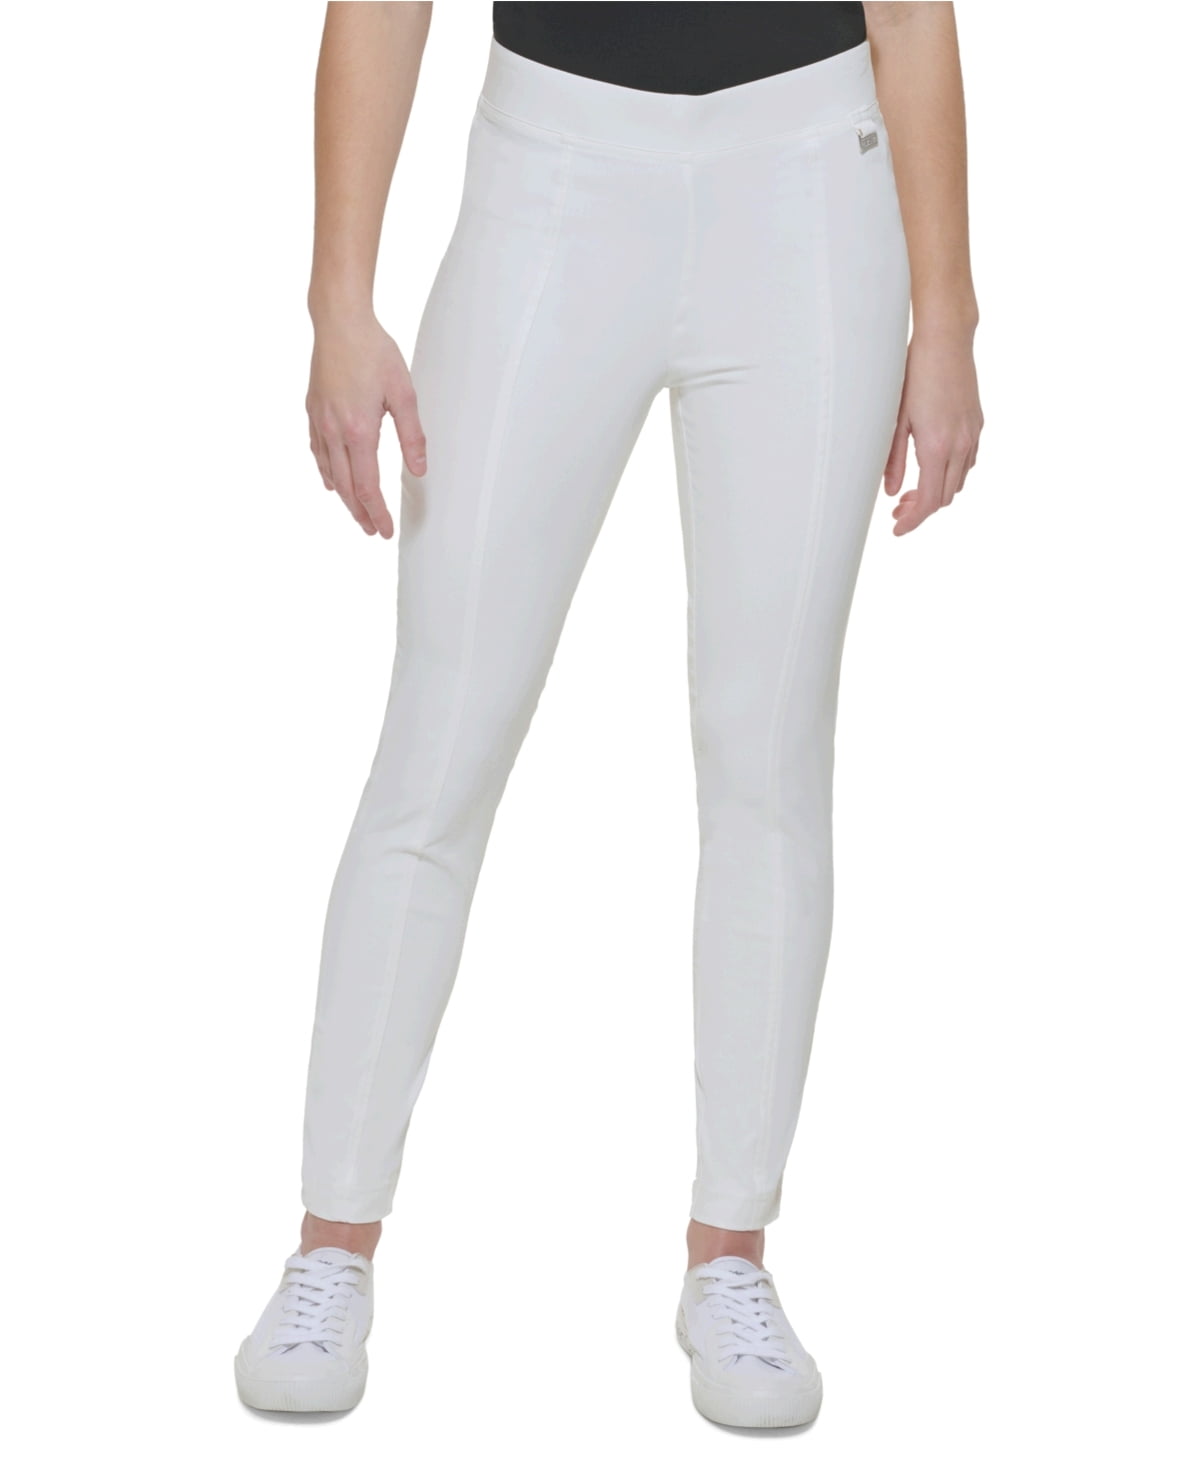 Calvin Klein Women's Front Seam Skinny Pants - Soft White -, soft white,  Size S 